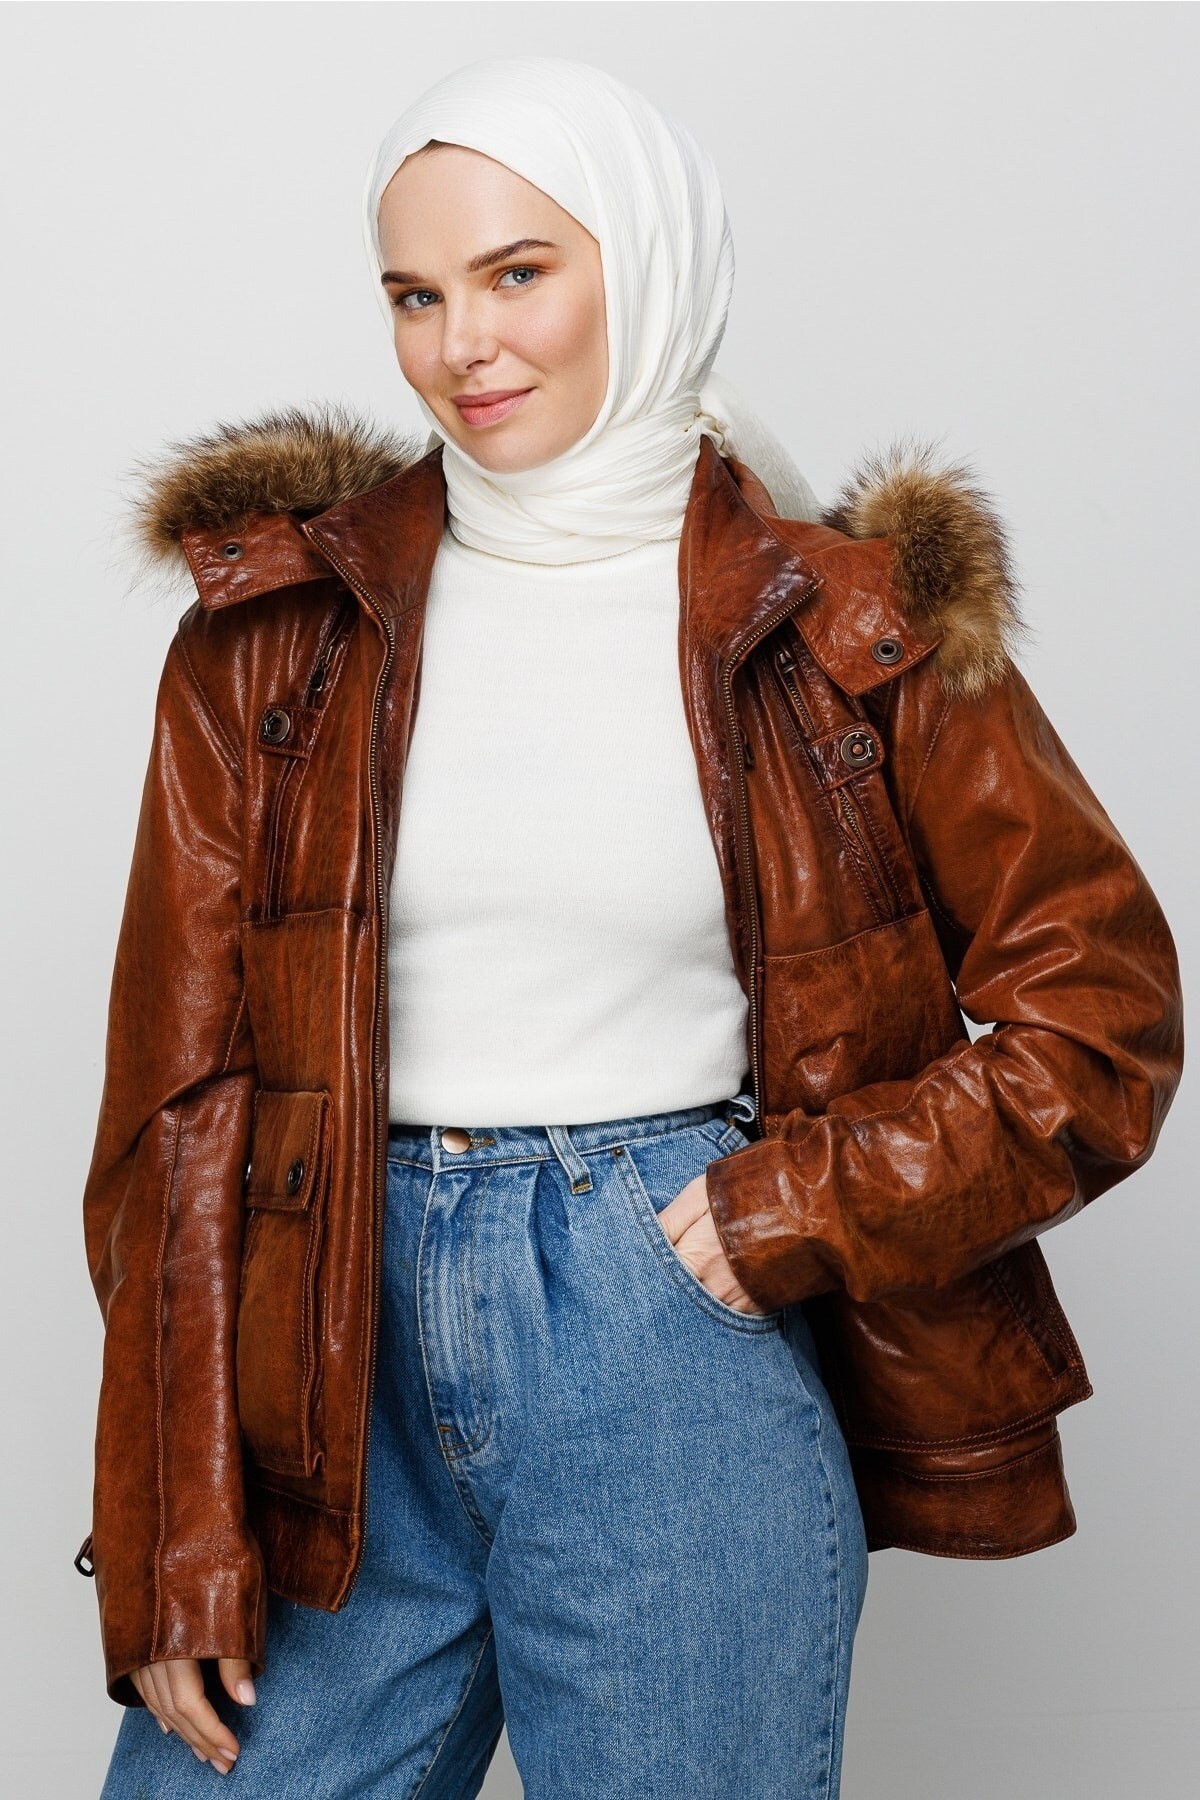 Krinkil Medina Silk Hijab